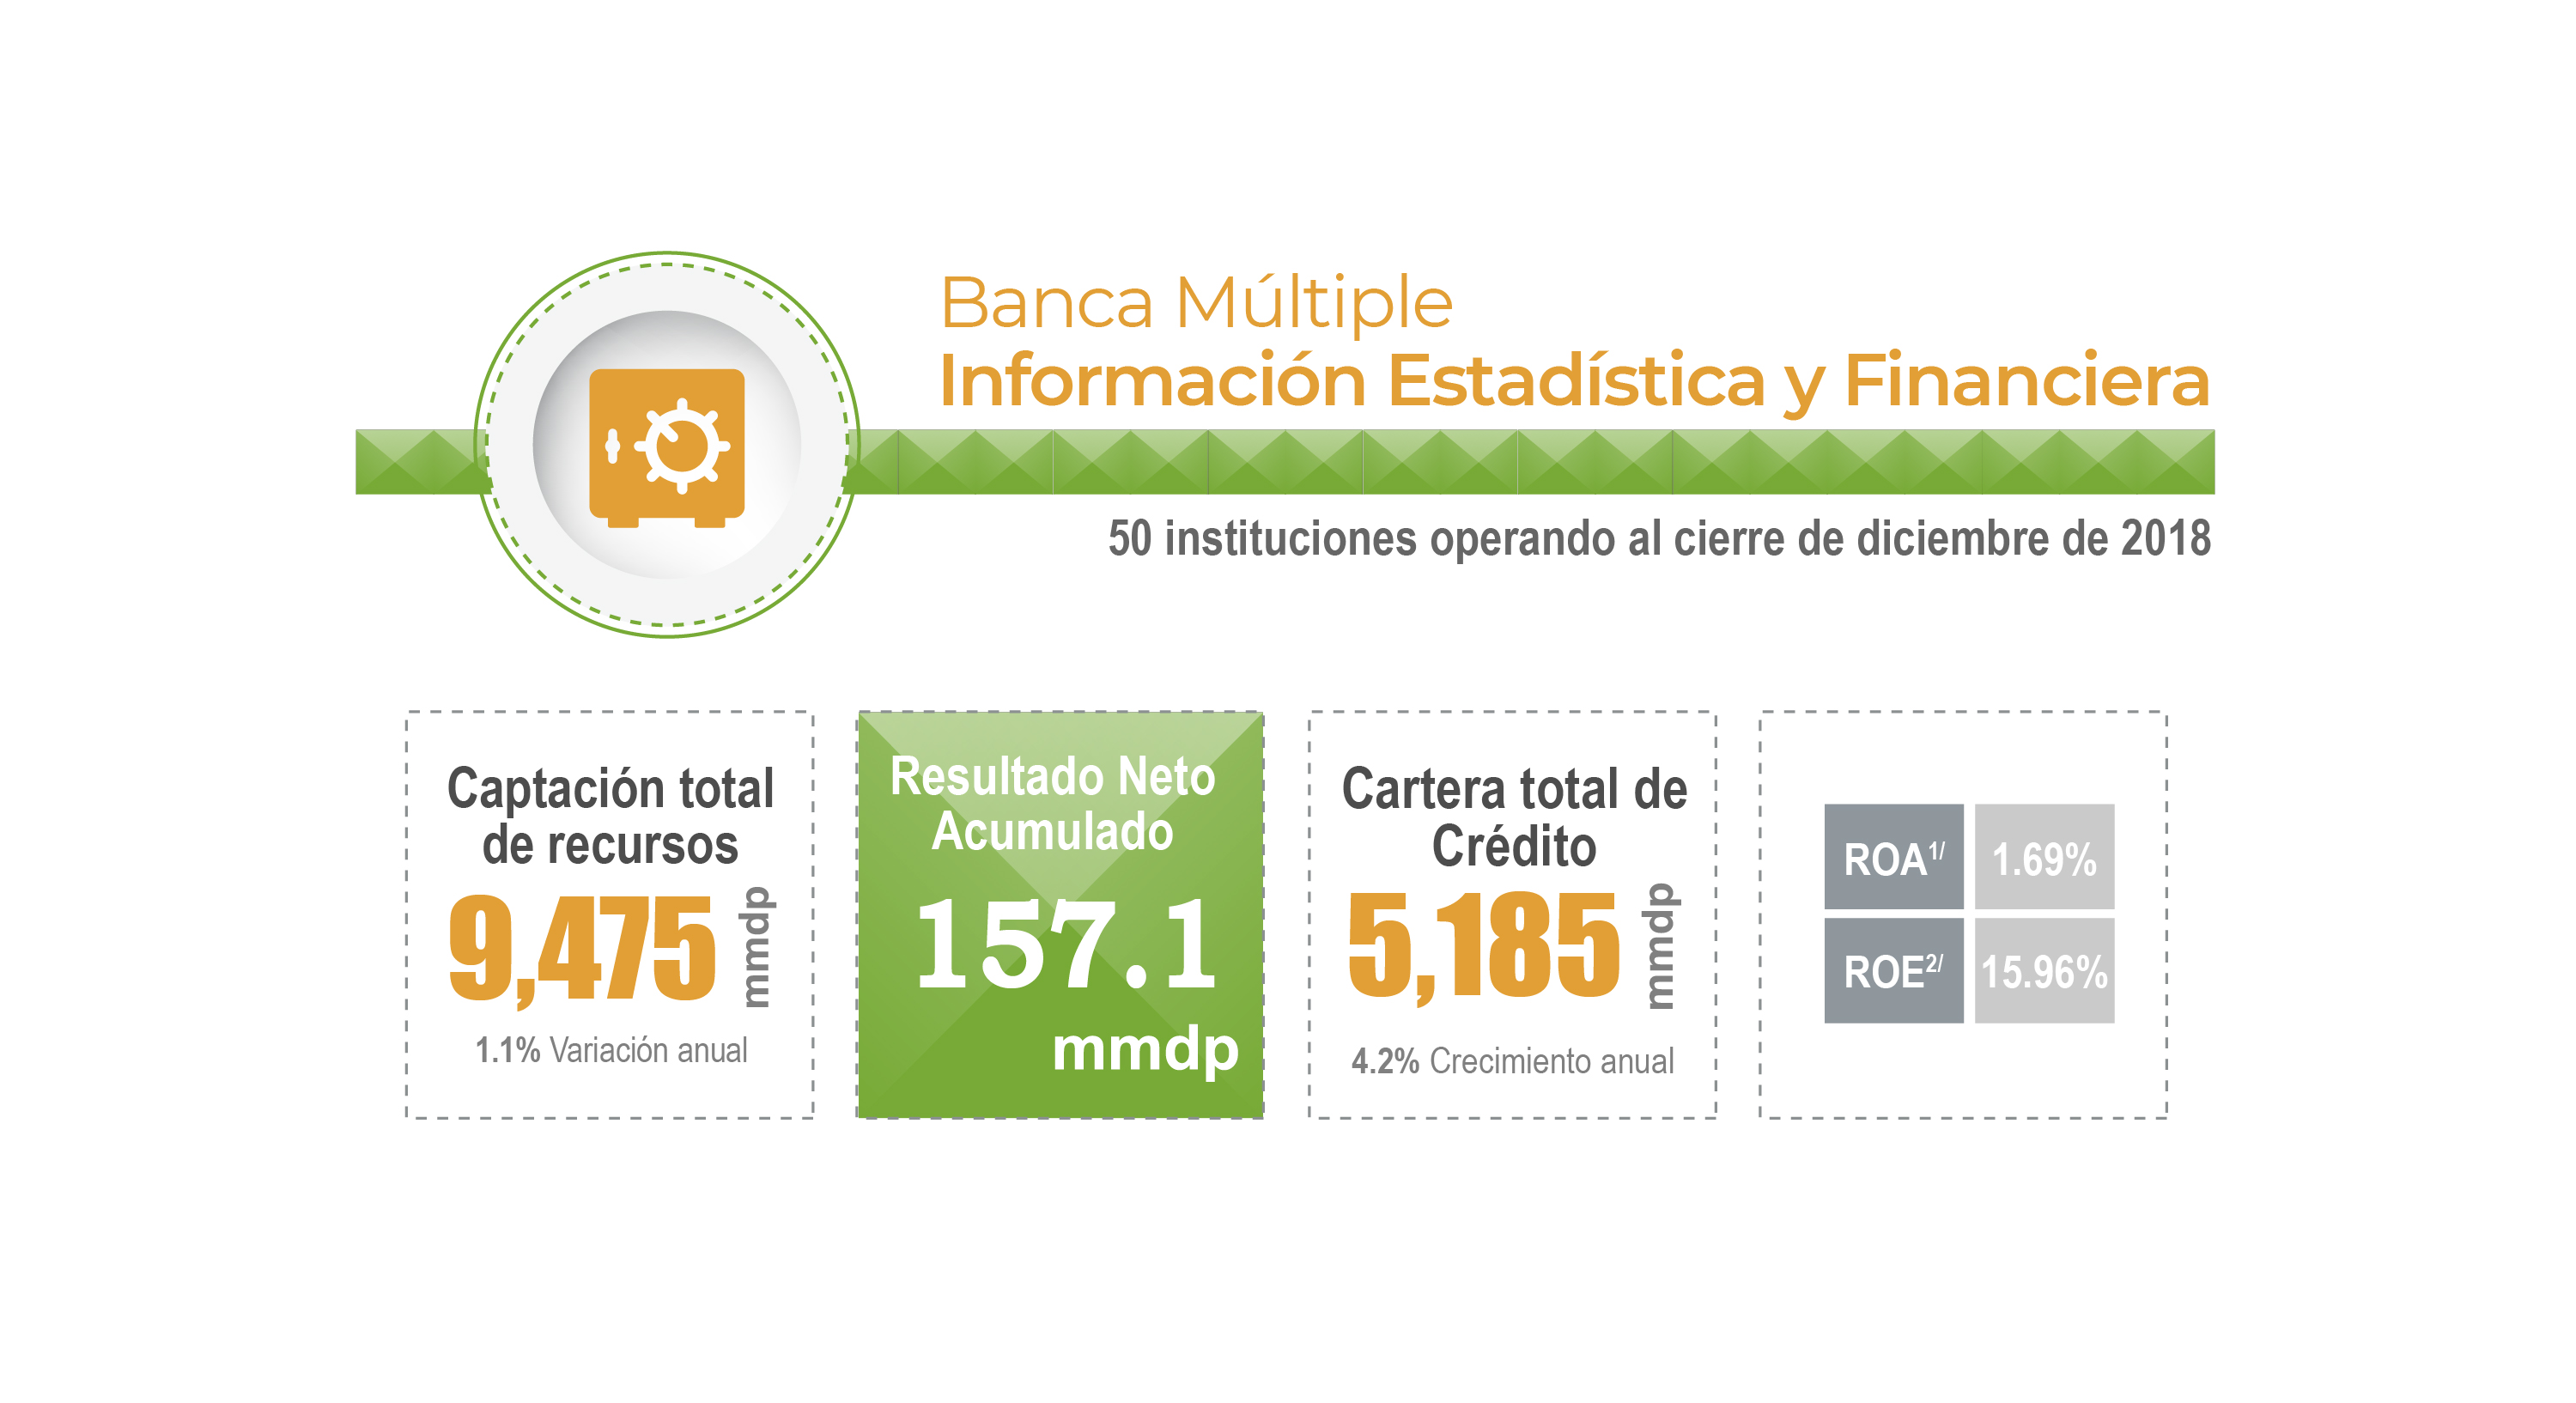 Información estadística y financiera del sector Banca Múltiple